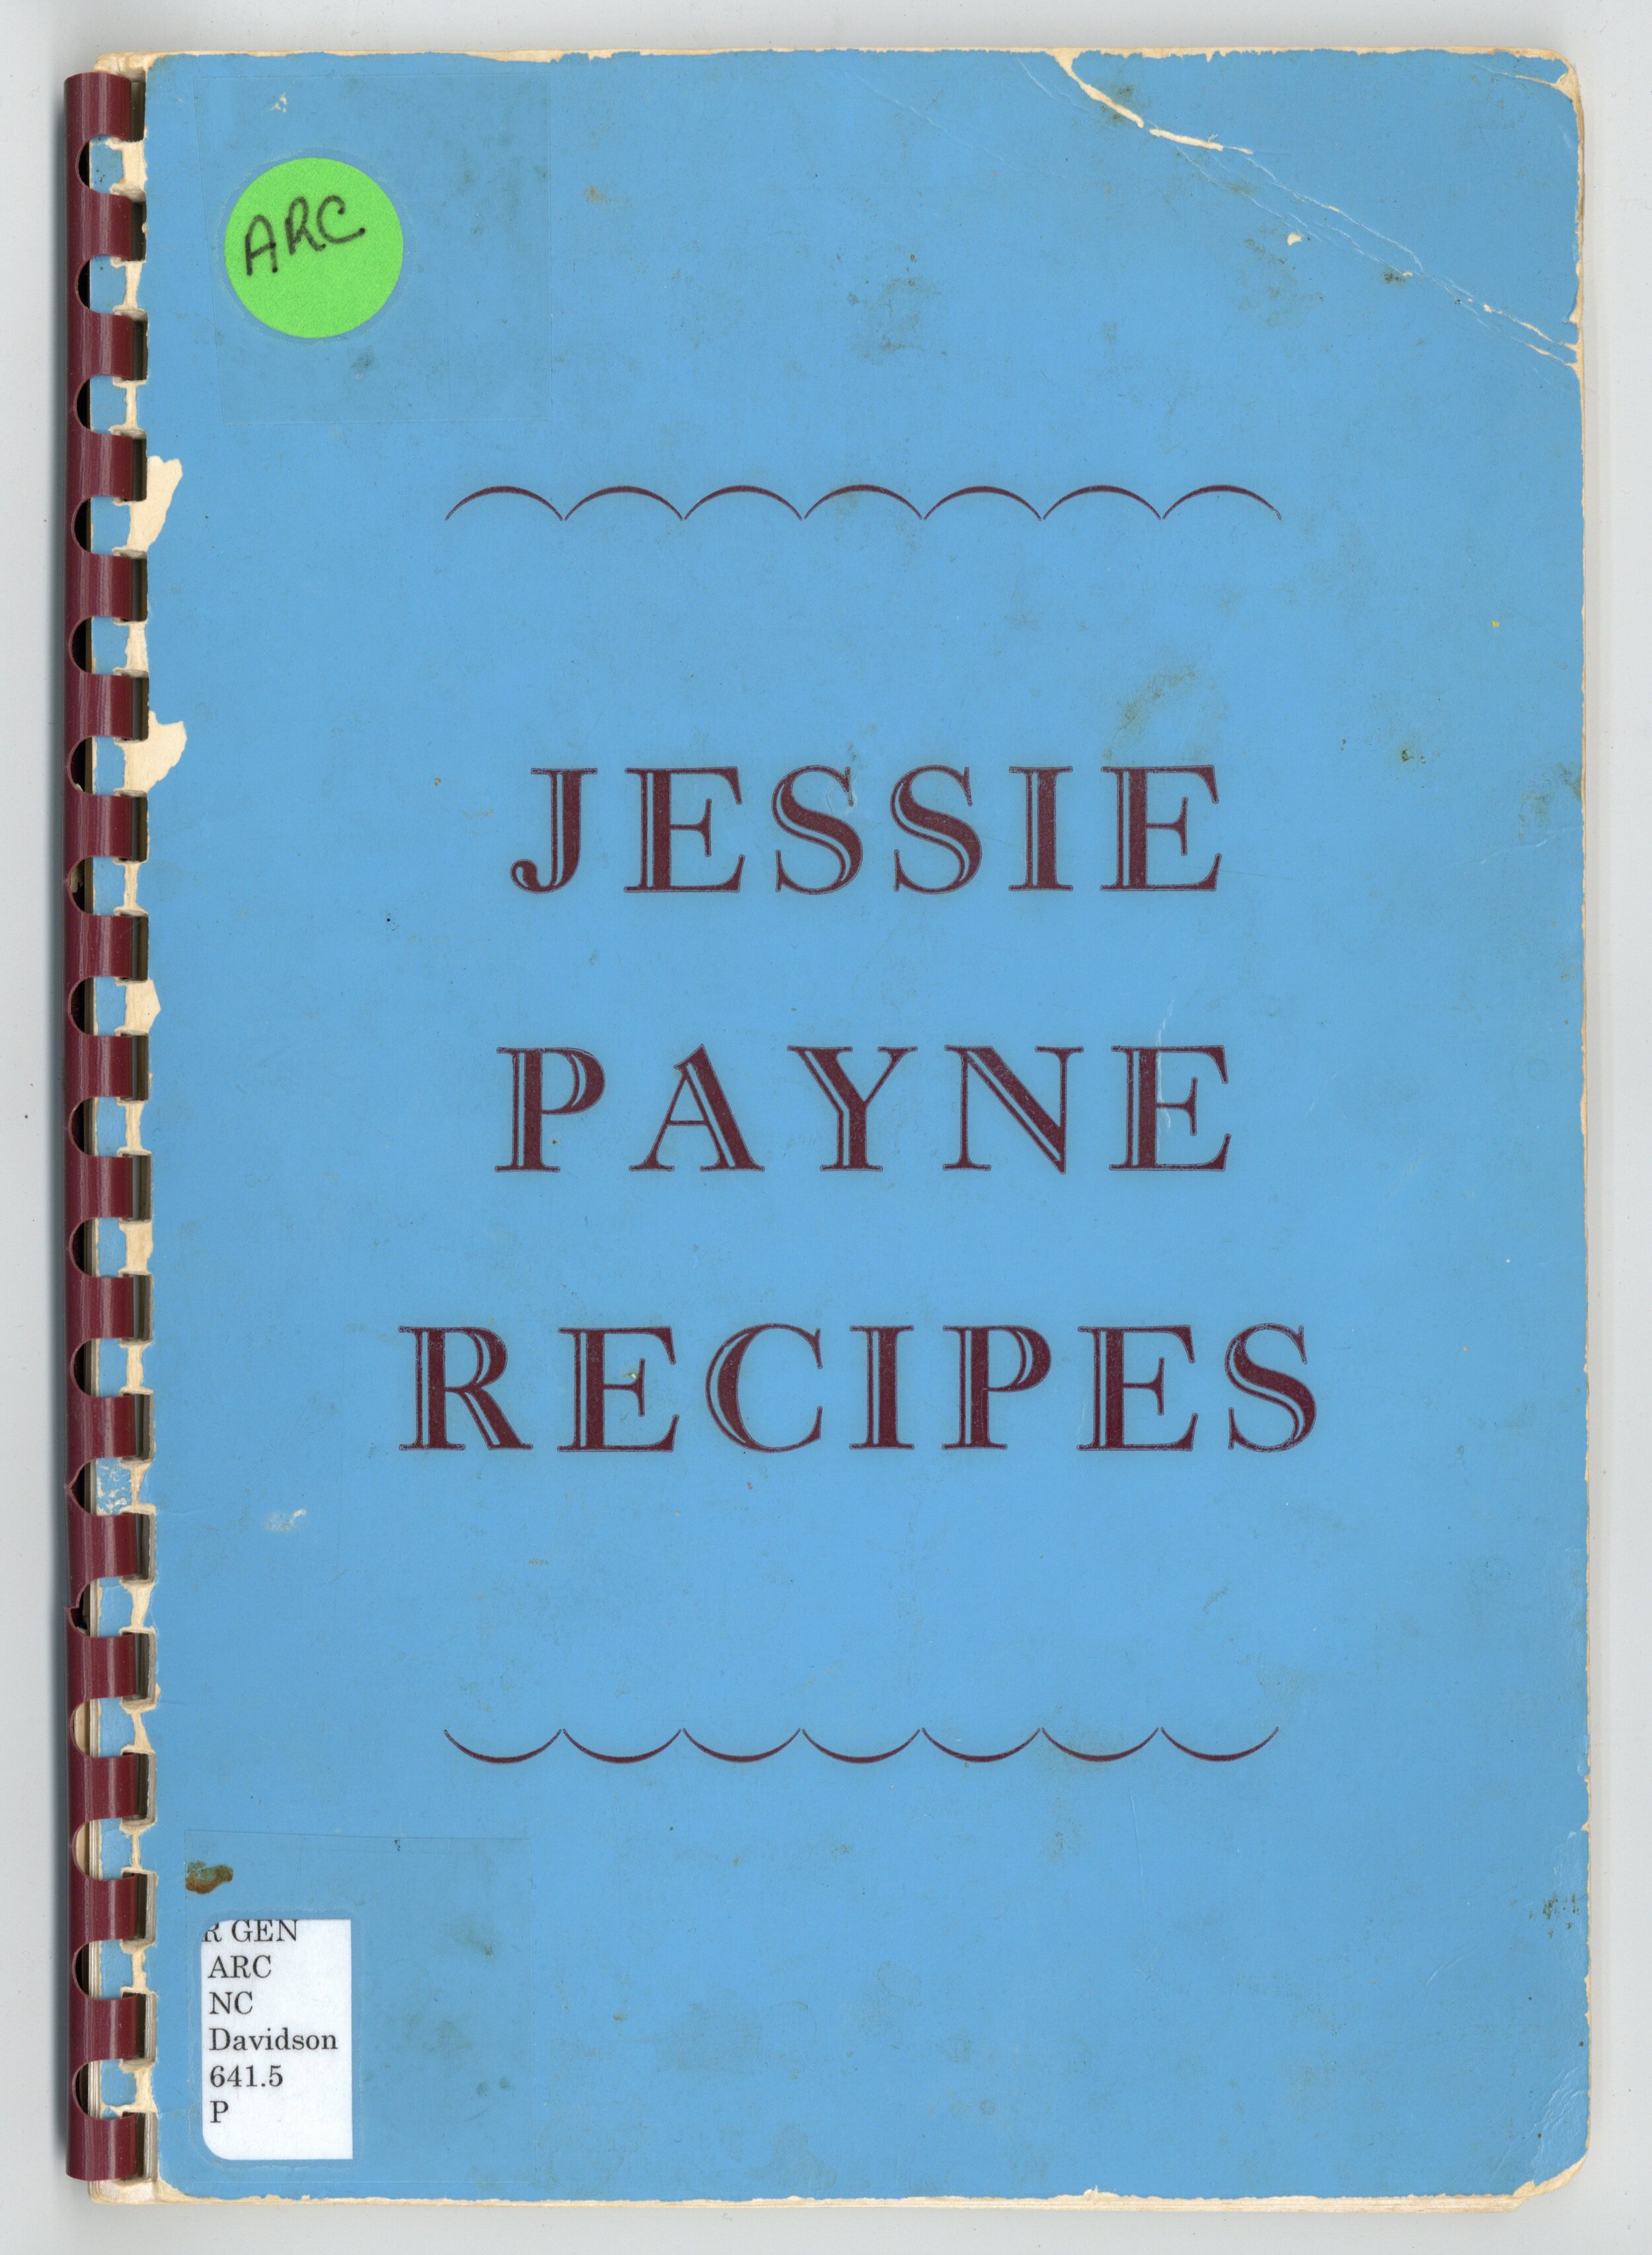 Jessie Payne Recipes_Cover.jpg